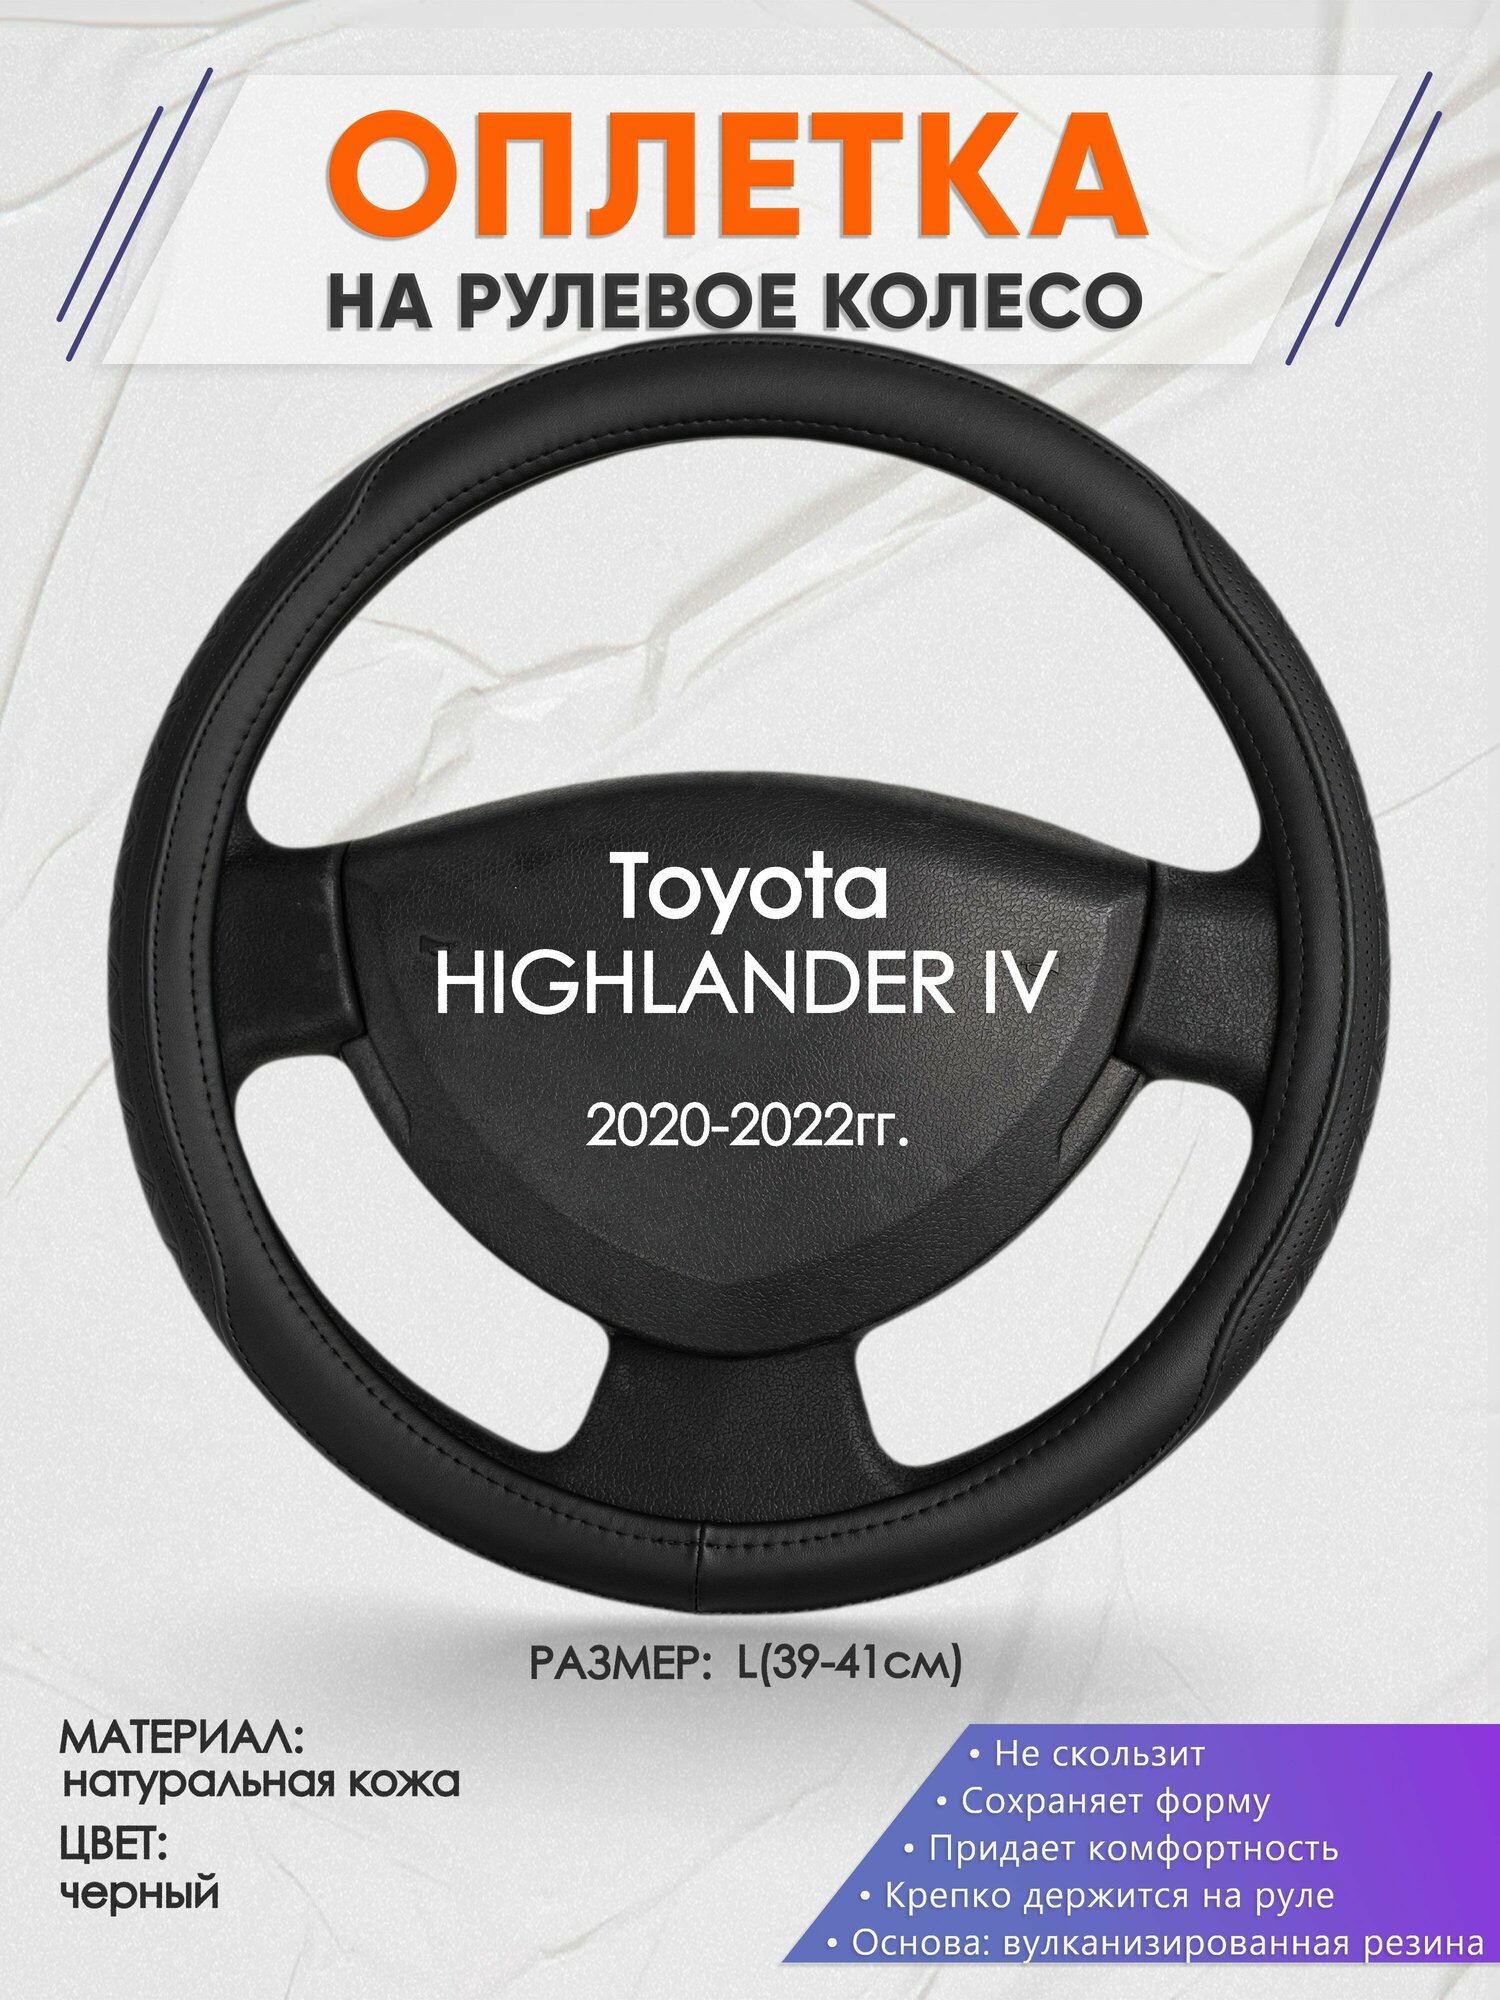 Оплетка на руль для Toyota HIGHLANDER 4(Тойота Хайлендер 4) 2020-2022, L(39-41см), Натуральная кожа 28